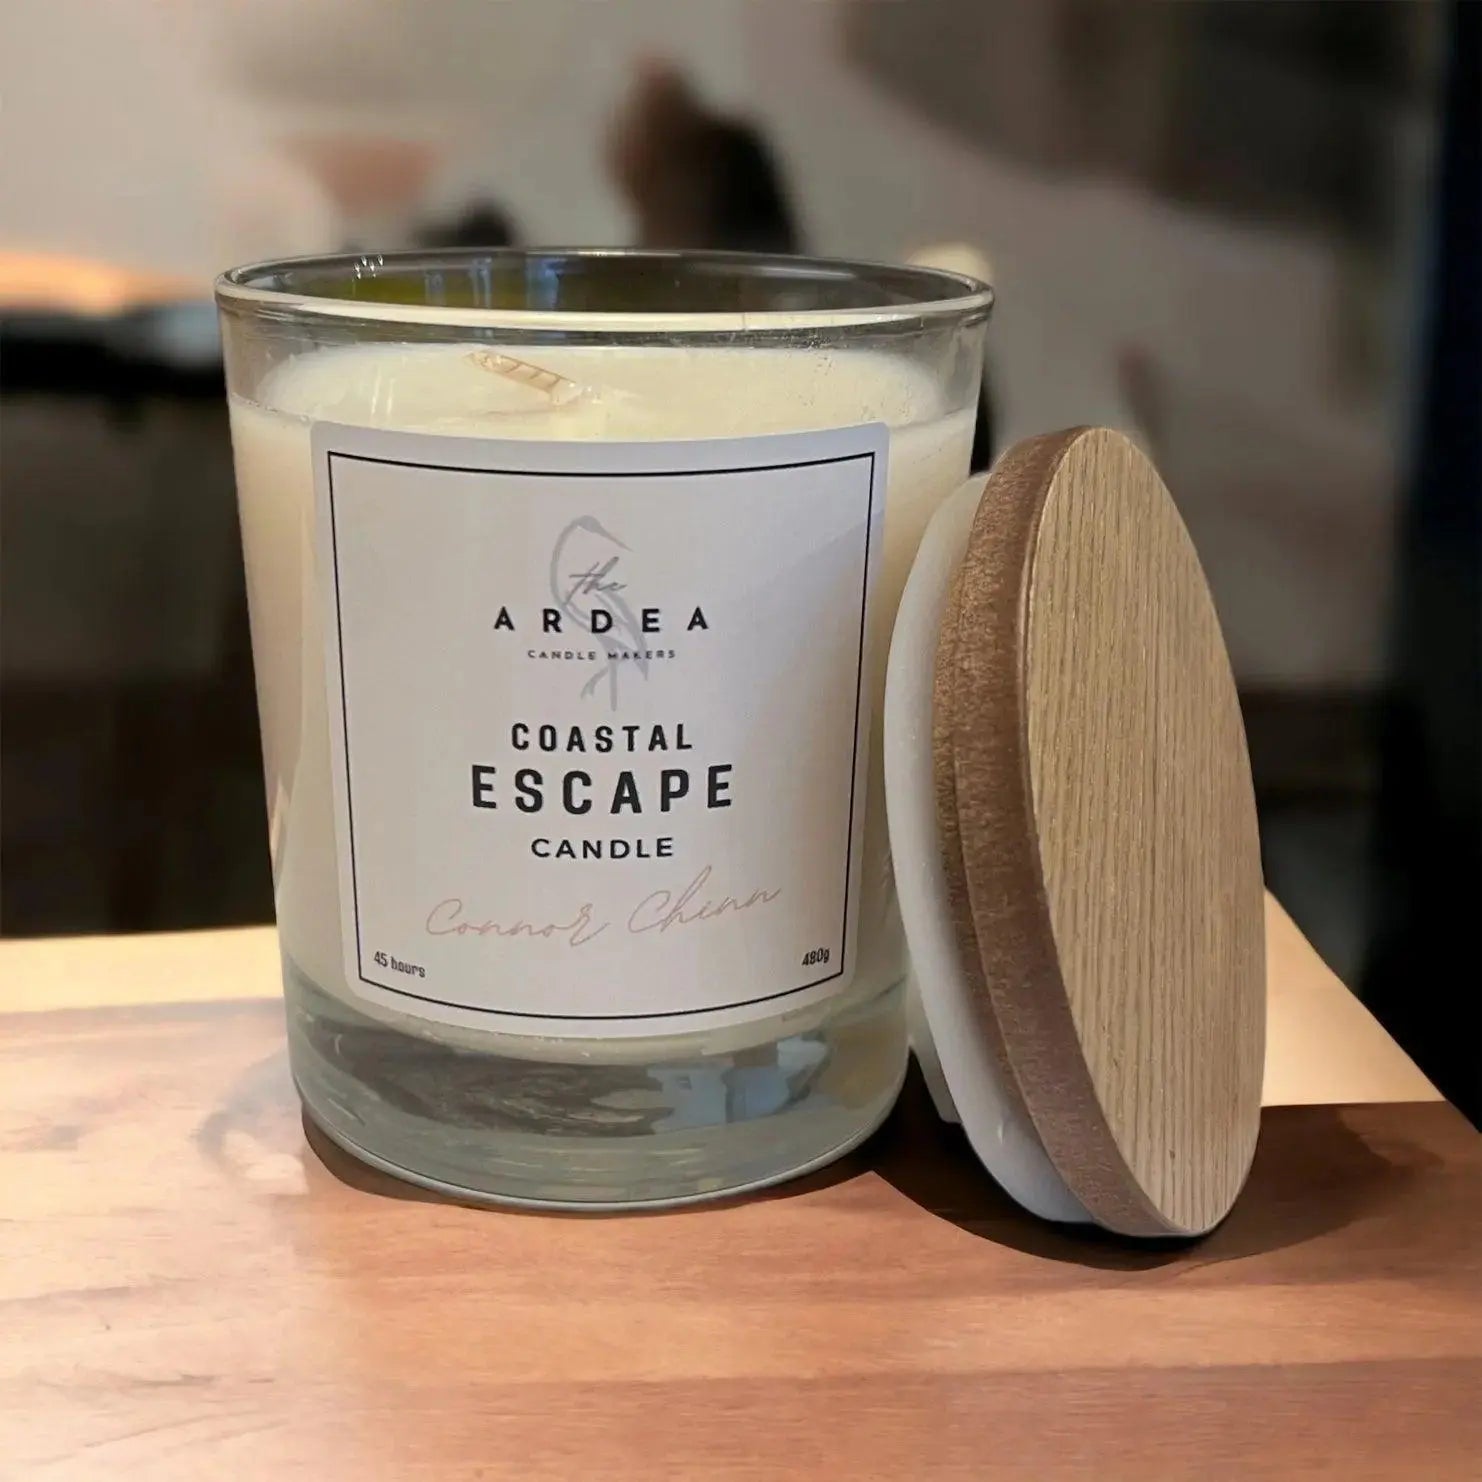 Coastal Escape Candle - 600g - The Ardea Candle Makers